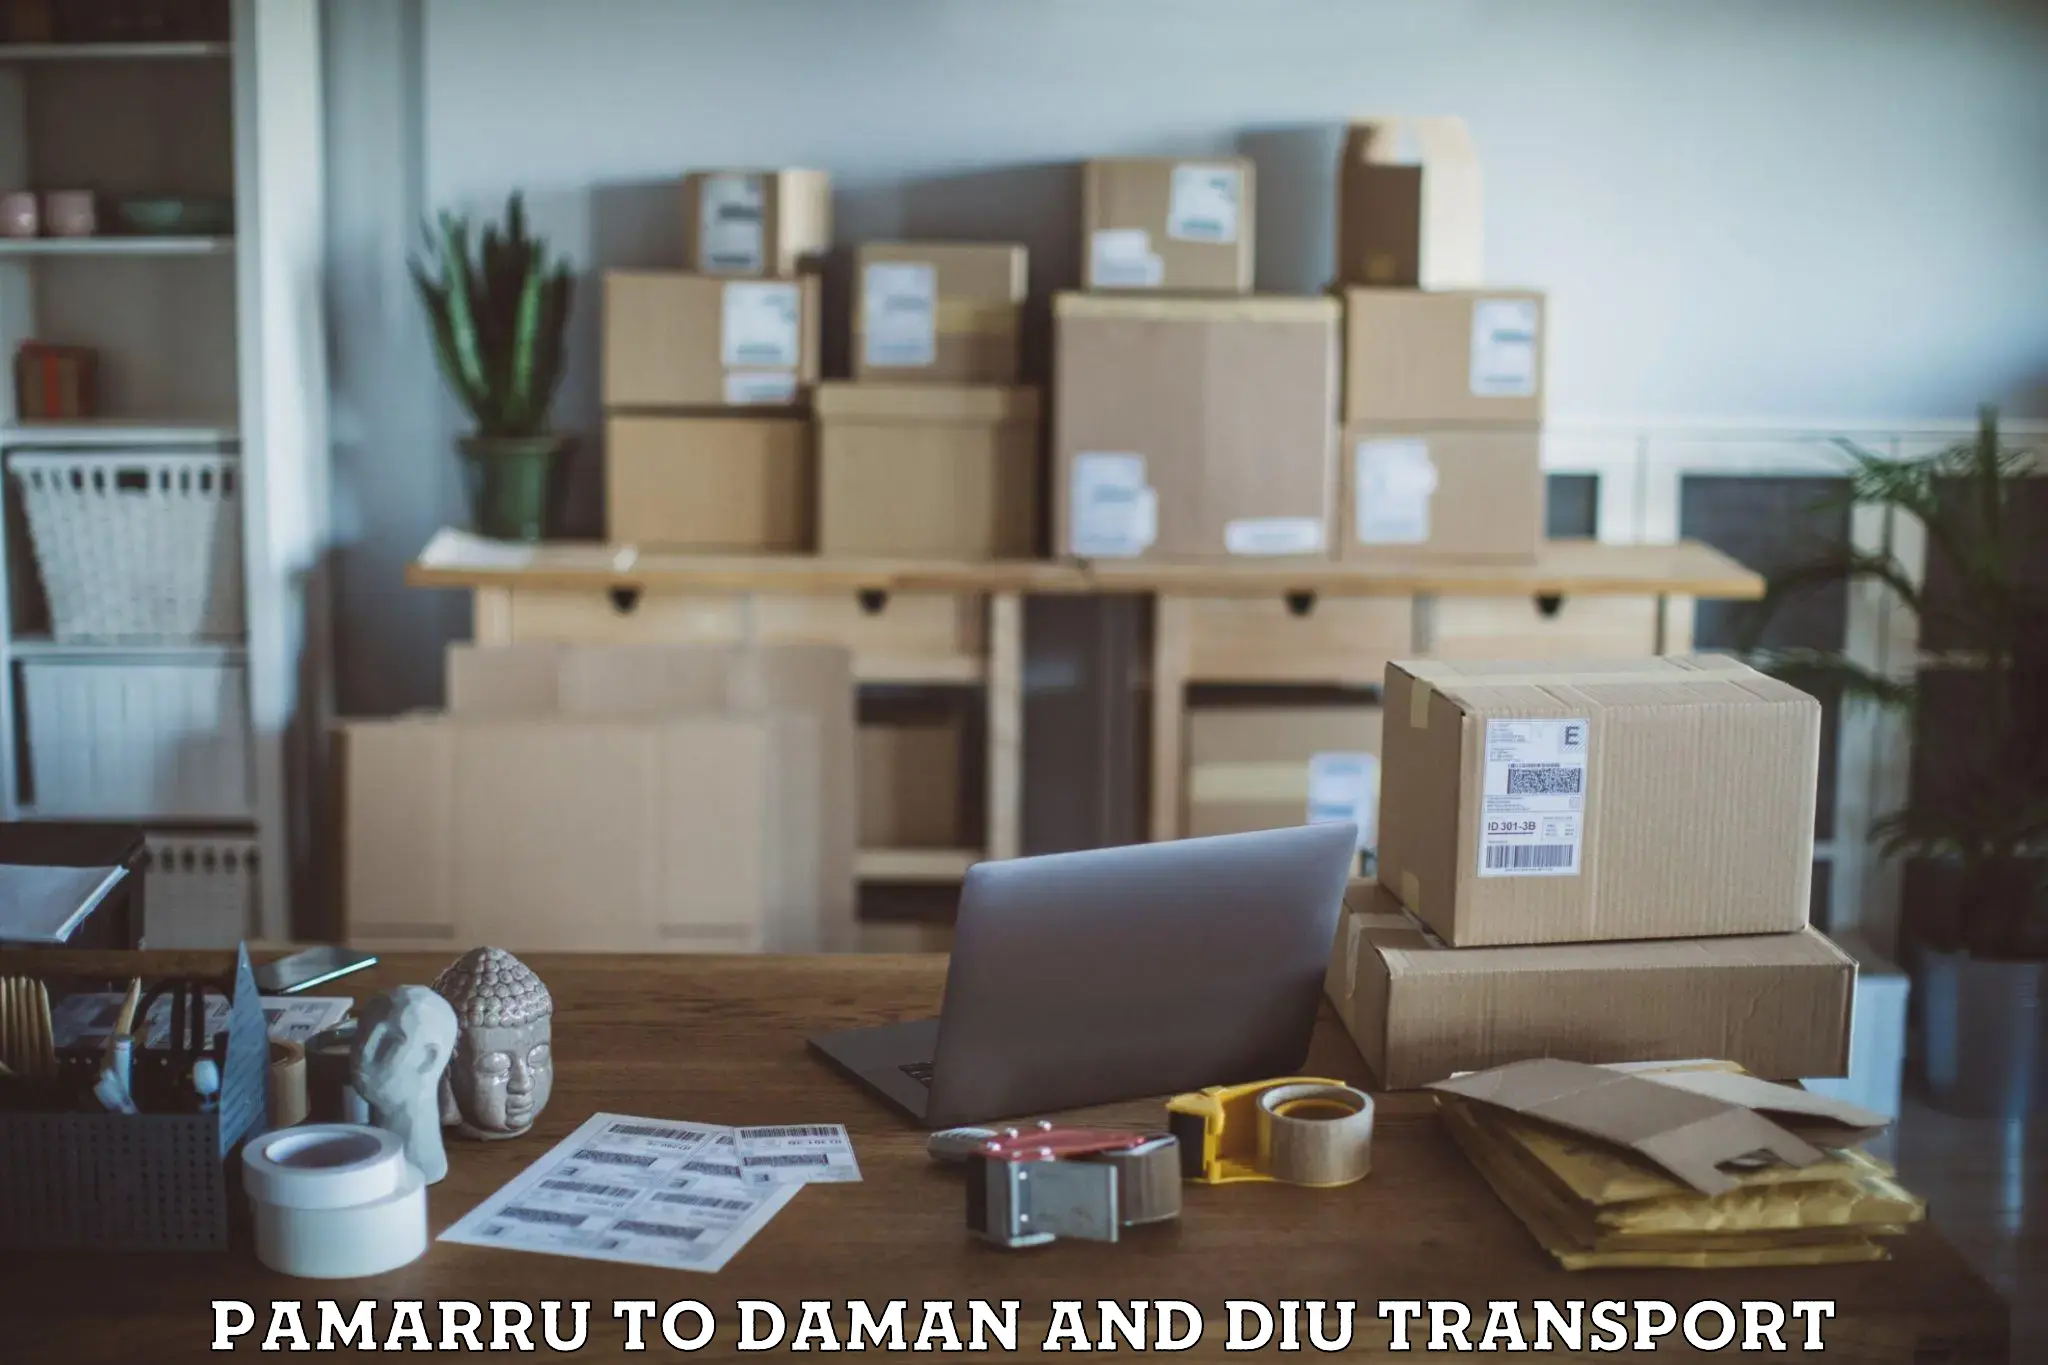 Land transport services Pamarru to Daman and Diu